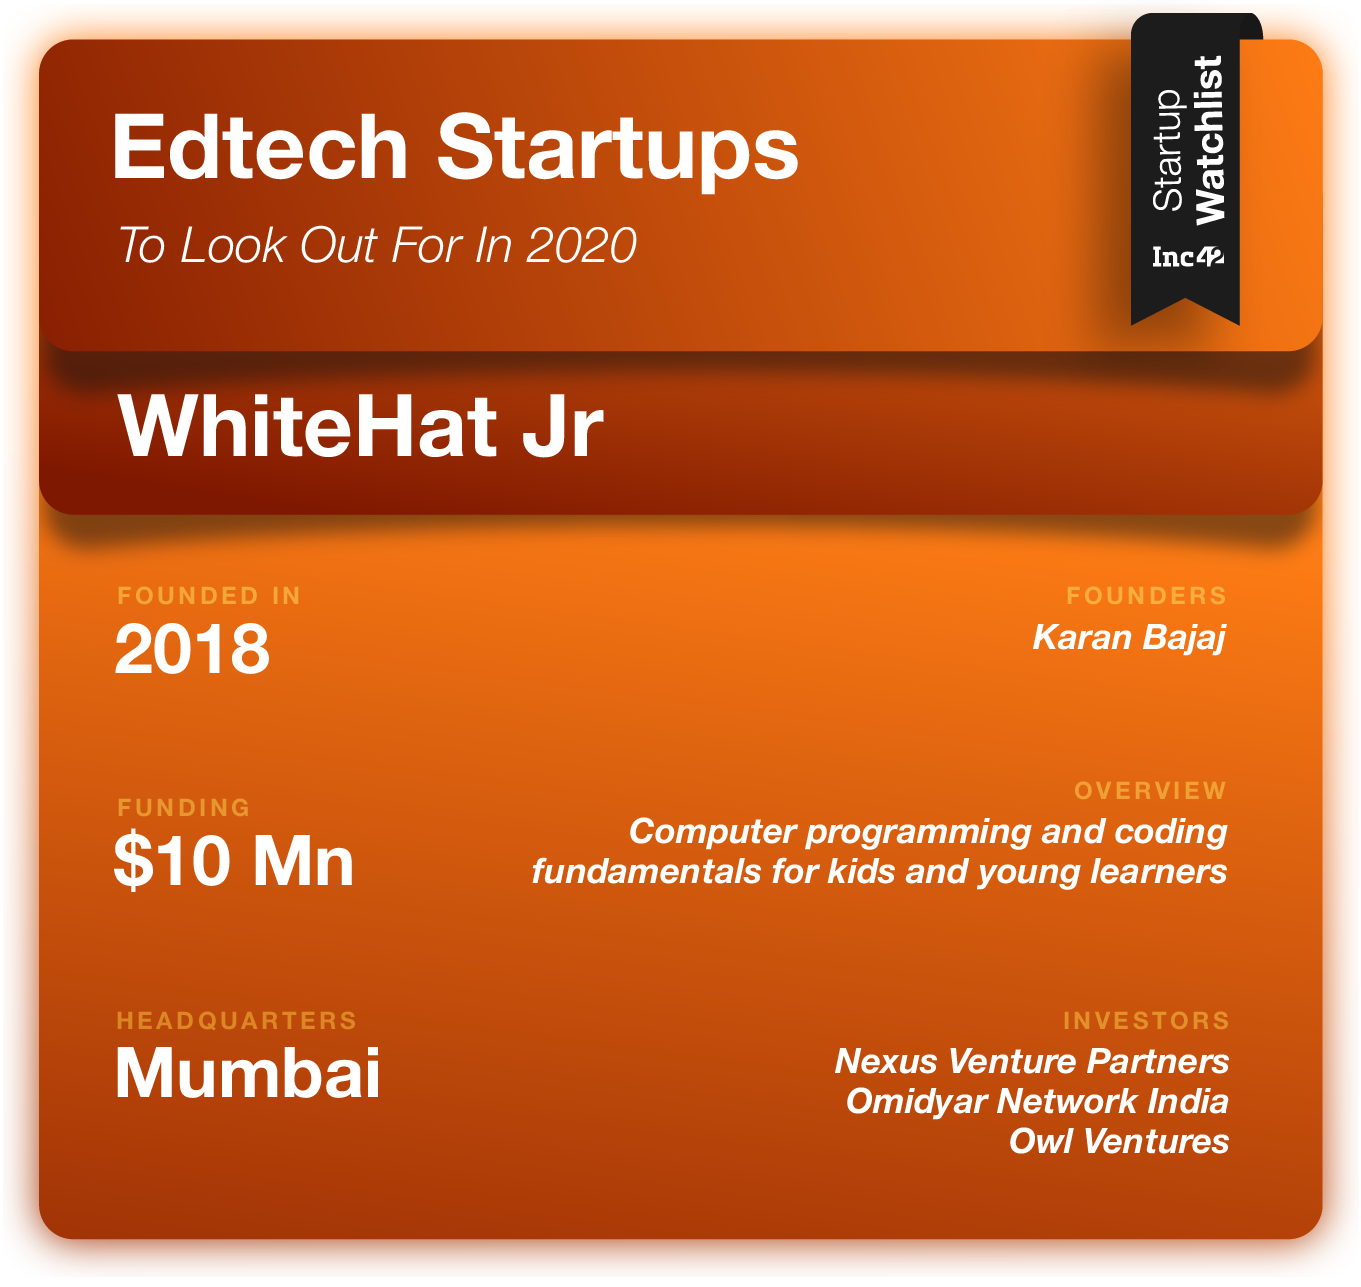 Edtech Startups 2020 WhiteHat Jr